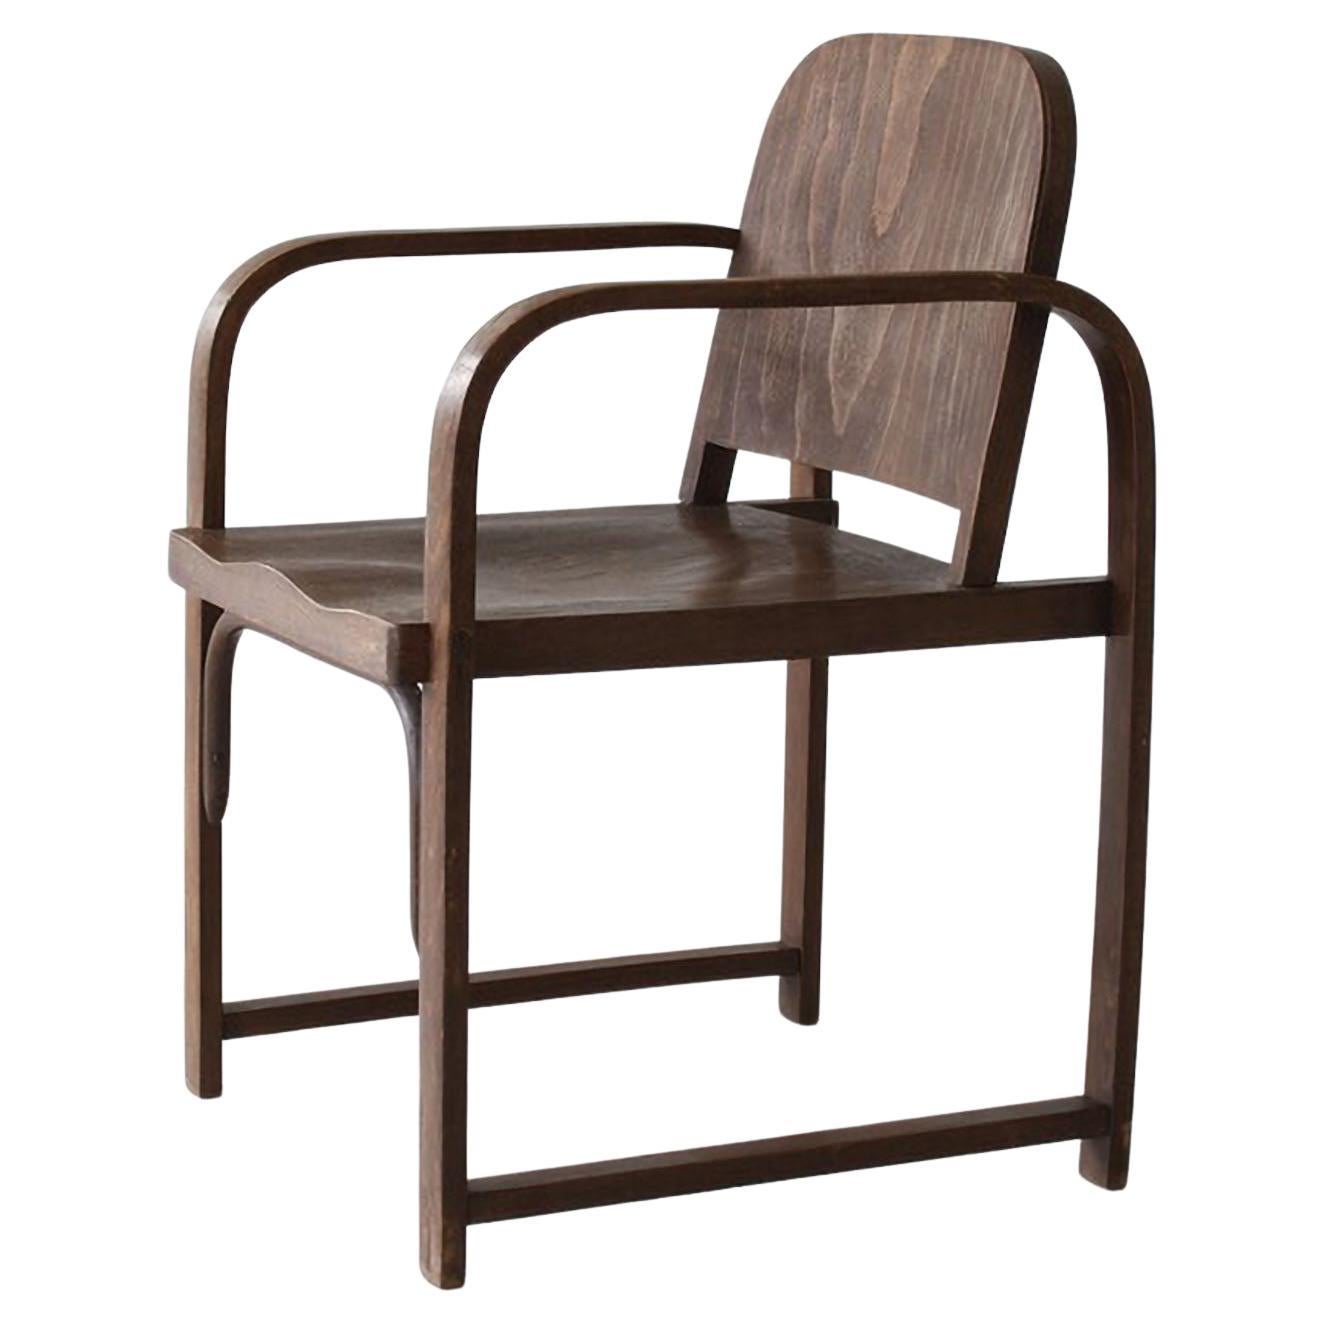 Modernistischer Thonet A 745/F Sessel der Moderne, hergestellt von Tatra, gebeiztes Holz, um 1930